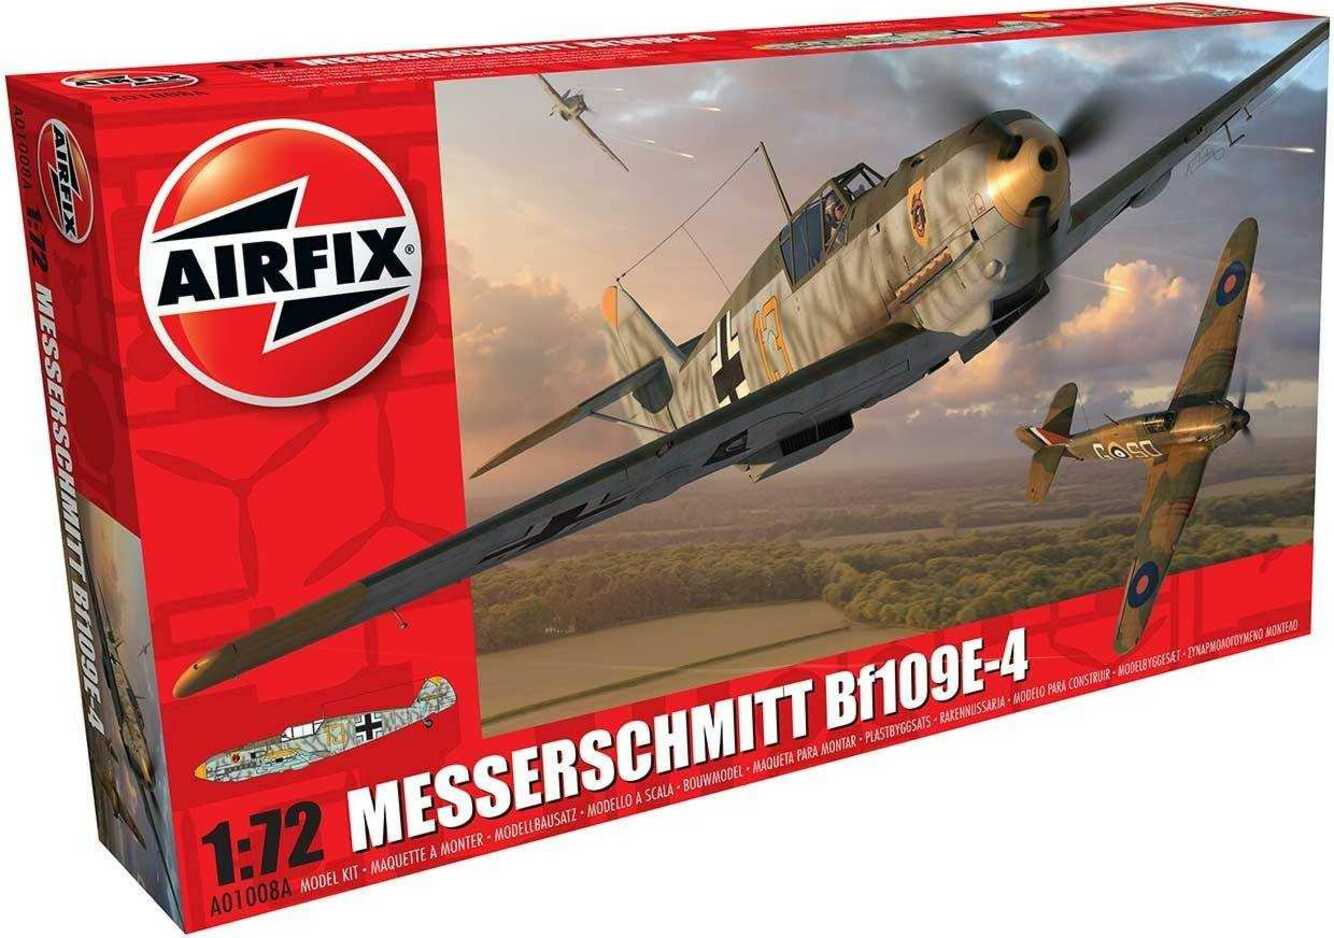 Classic Kit letadlo A01008A - Messerschmitt Bf109-4 (1:72)